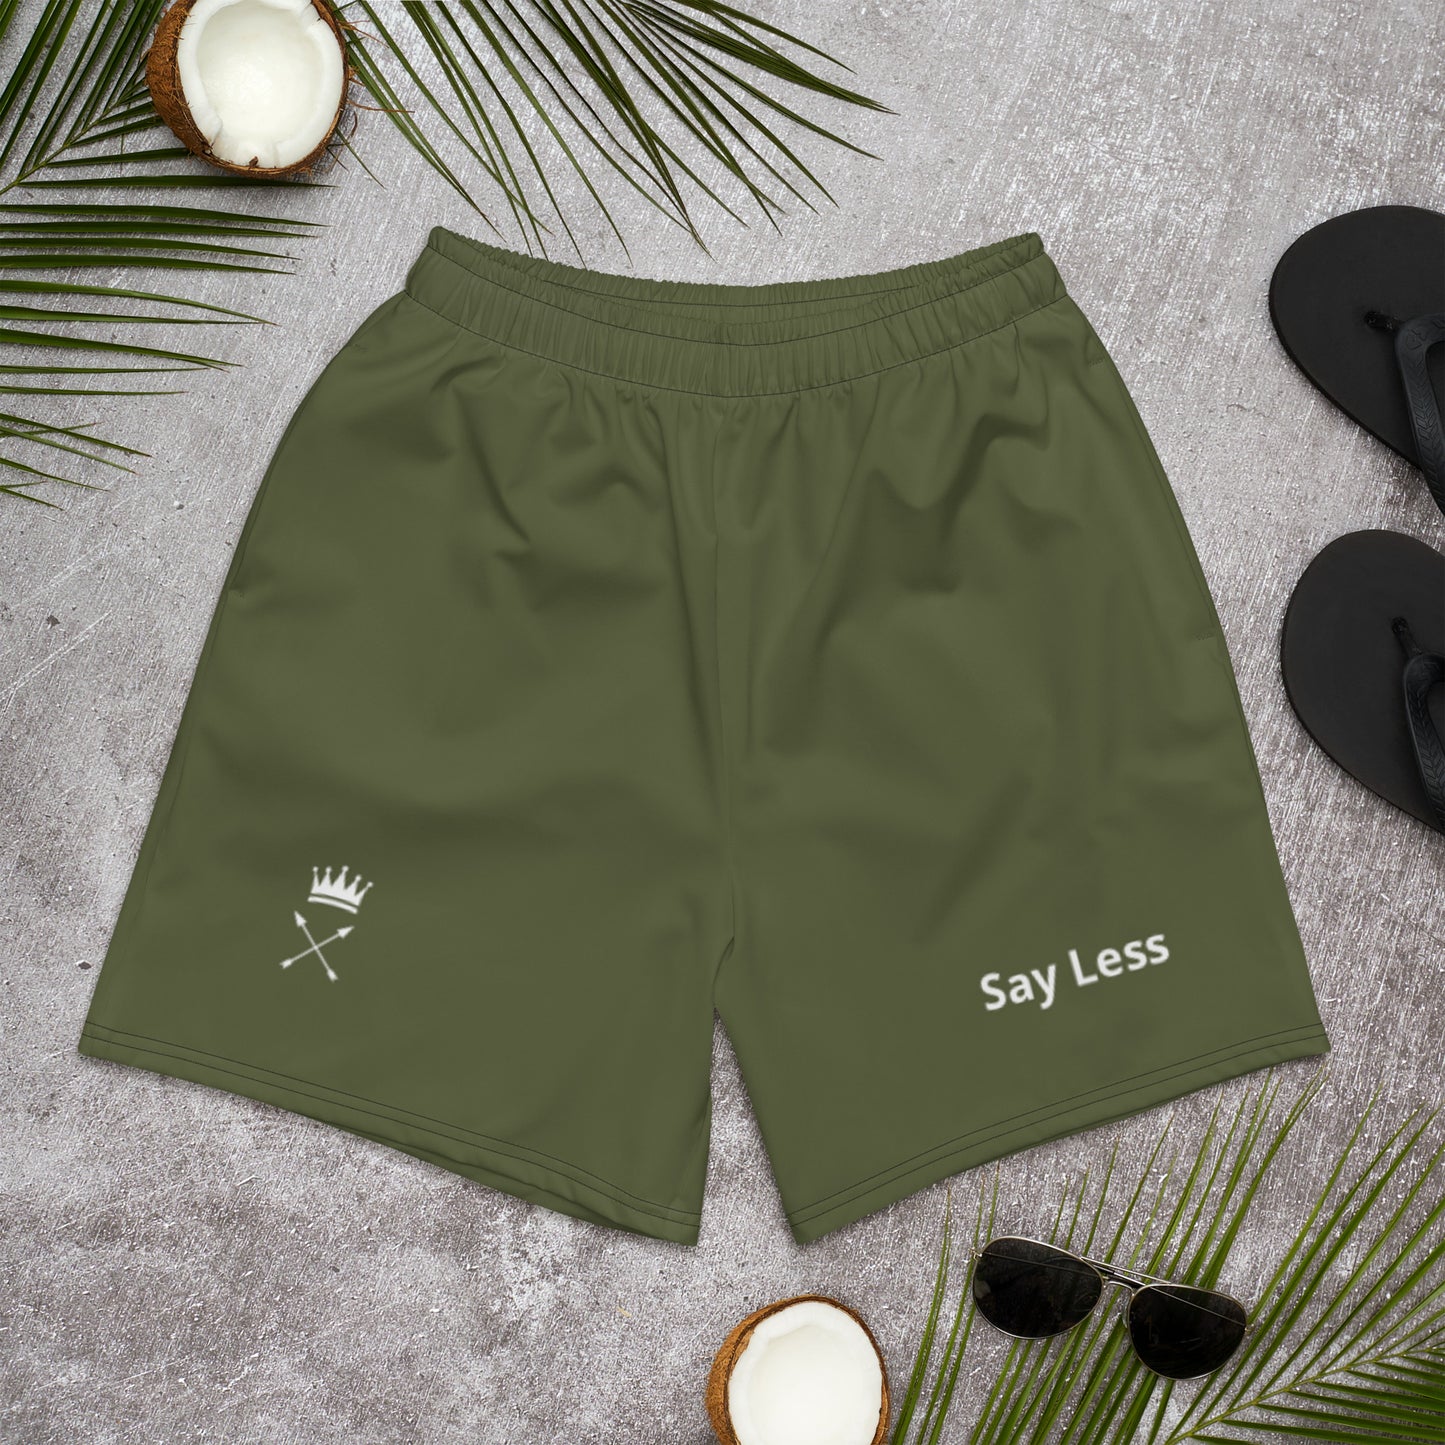 Say Less Shorts (Green)